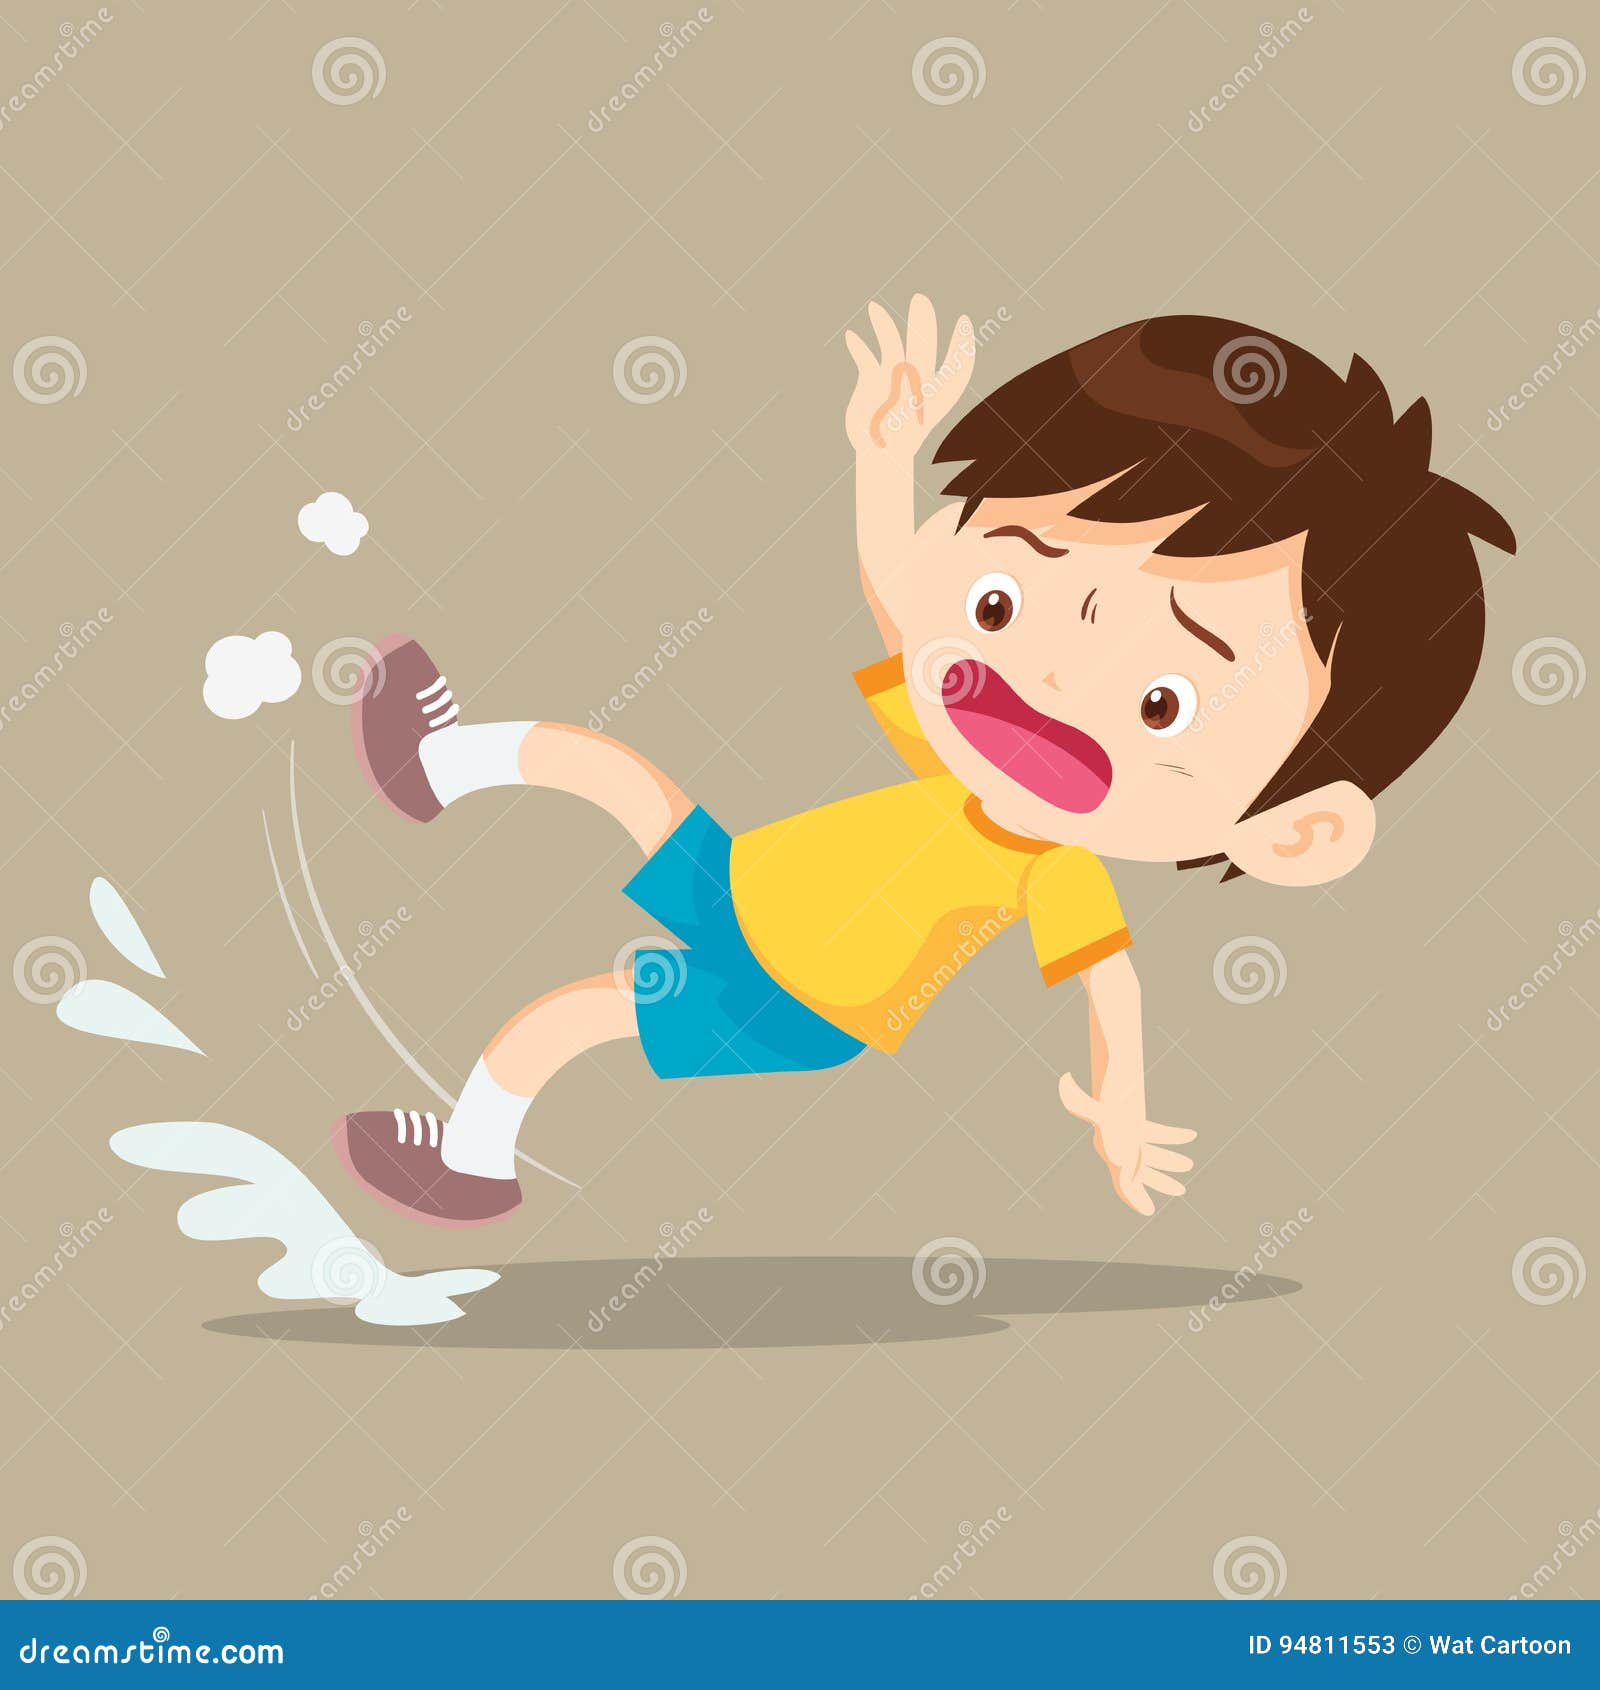 Cartoon Boy Fall Down Vector Illustration | CartoonDealer.com #45747166